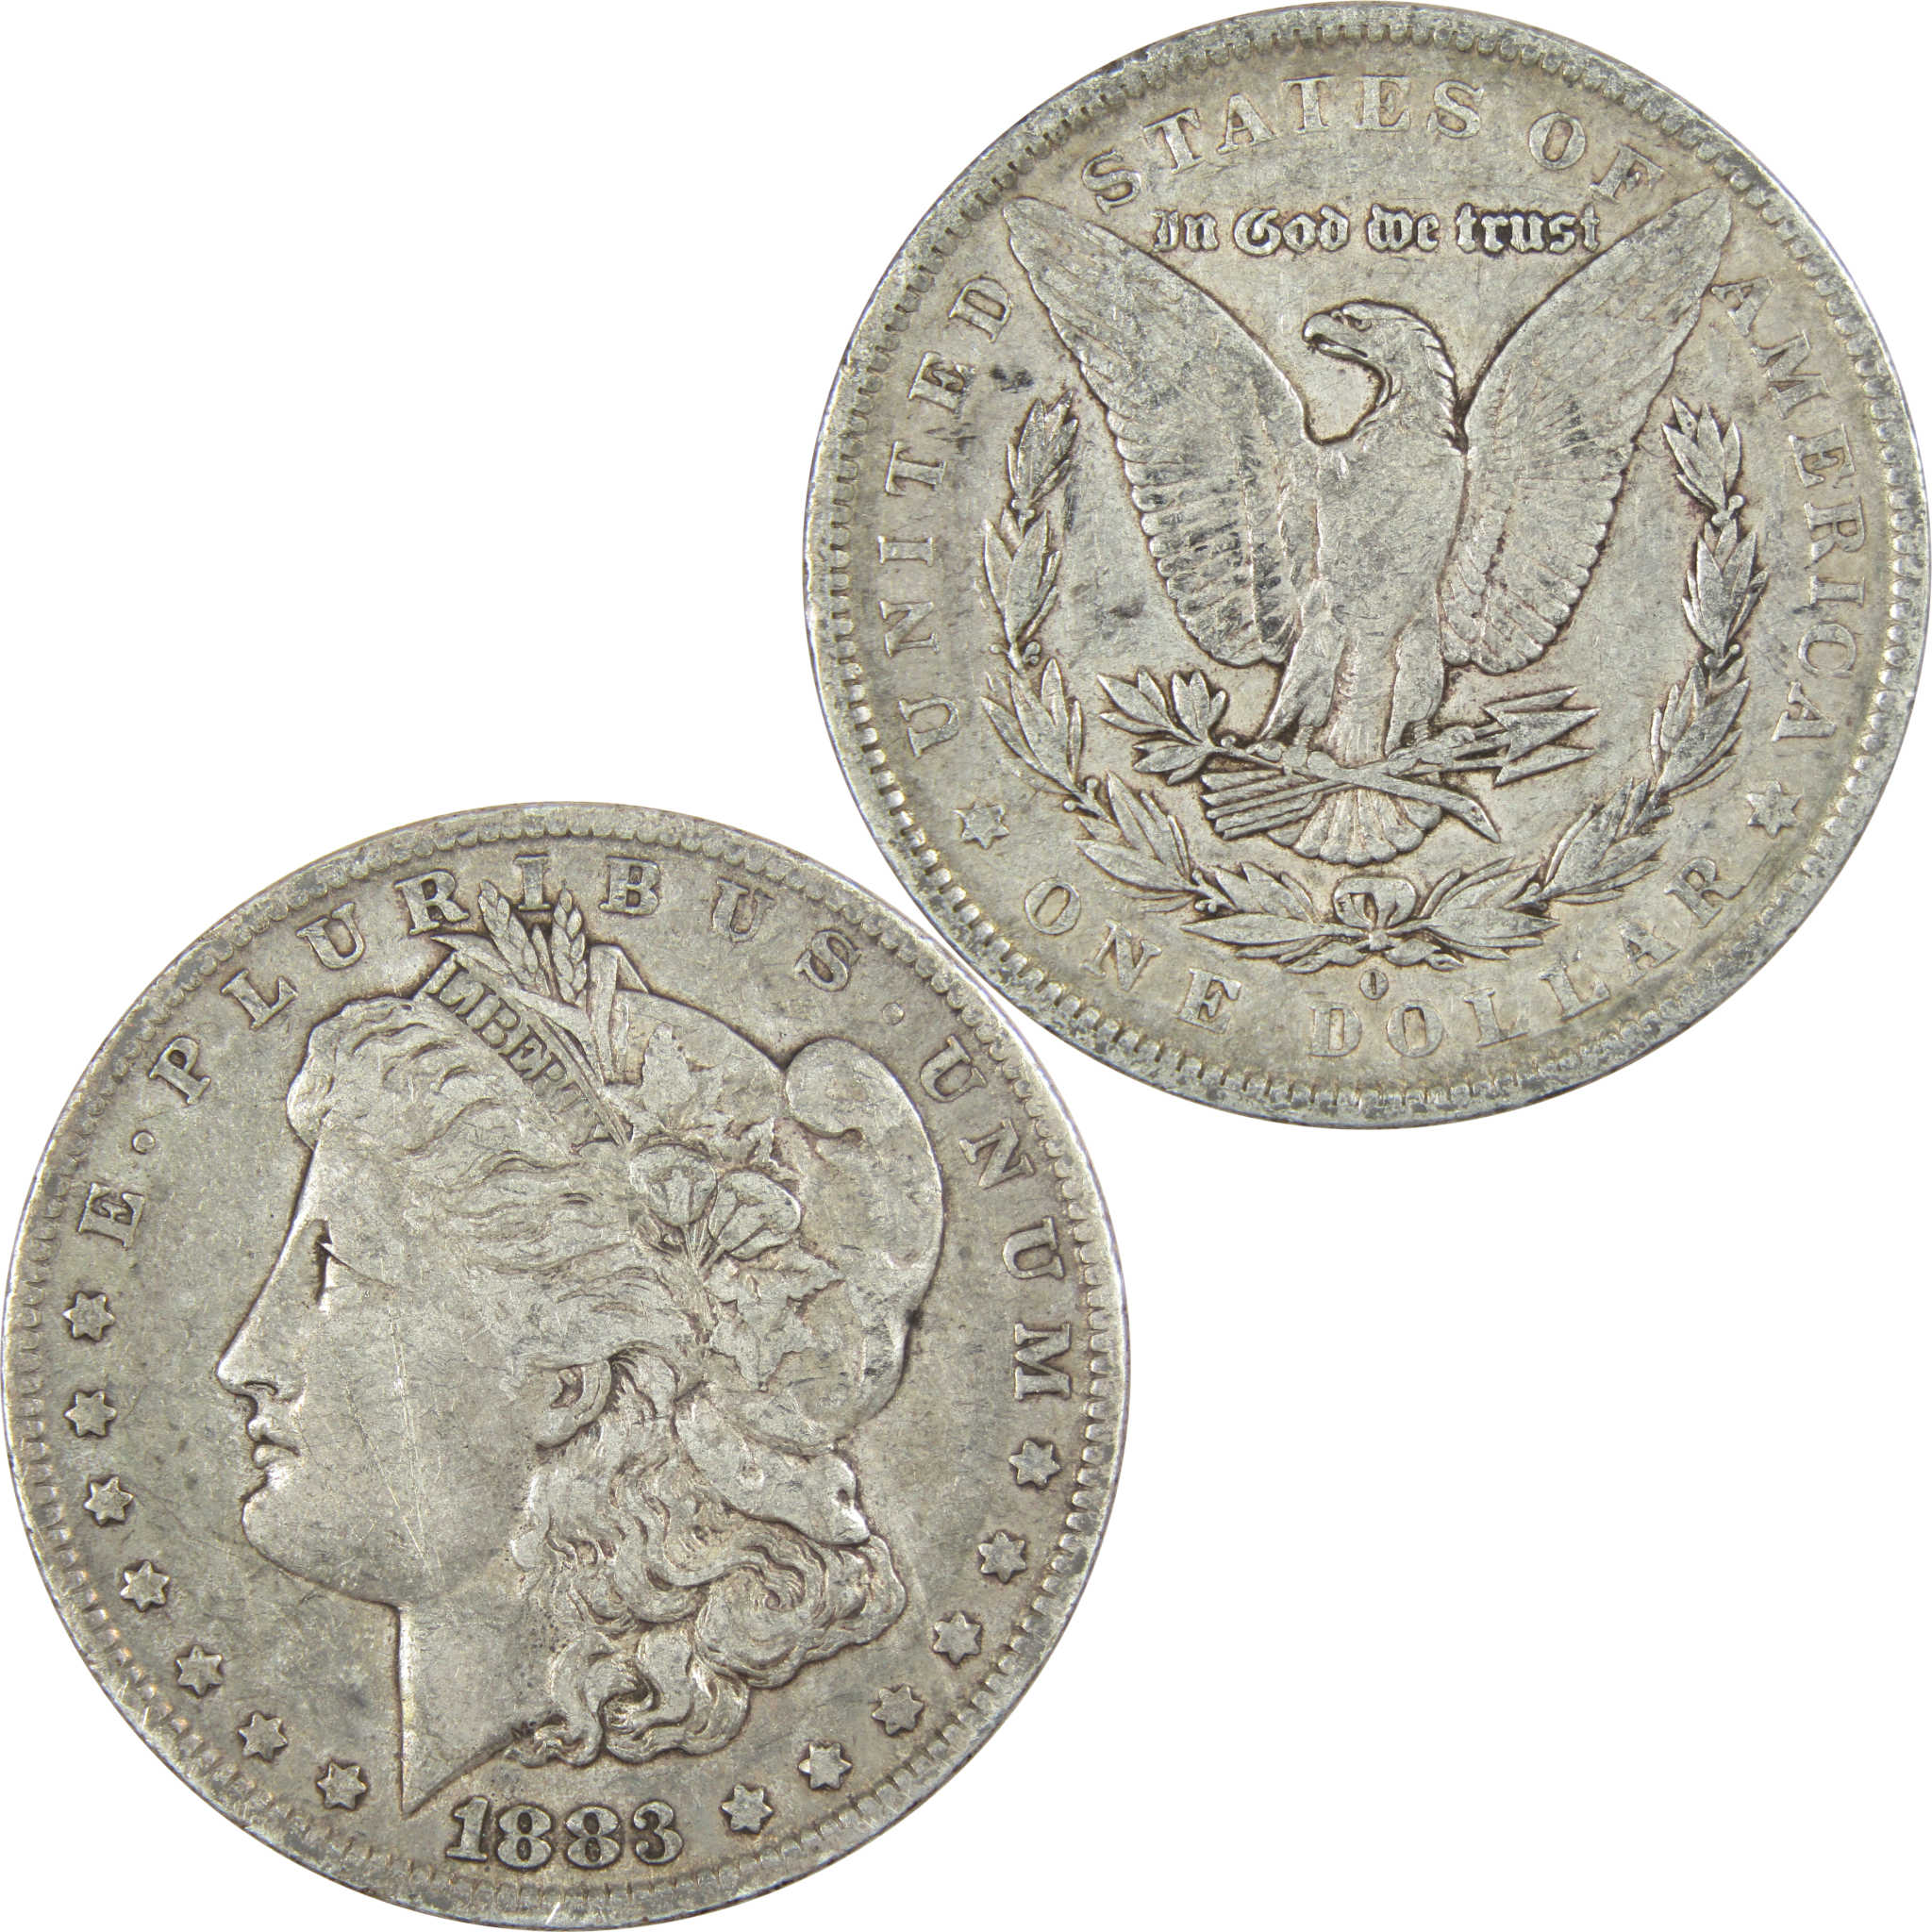 1883 O Morgan Dollar VF Very Fine 90% Silver $1 US Coin Collectible - Morgan coin - Morgan silver dollar - Morgan silver dollar for sale - Profile Coins &amp; Collectibles